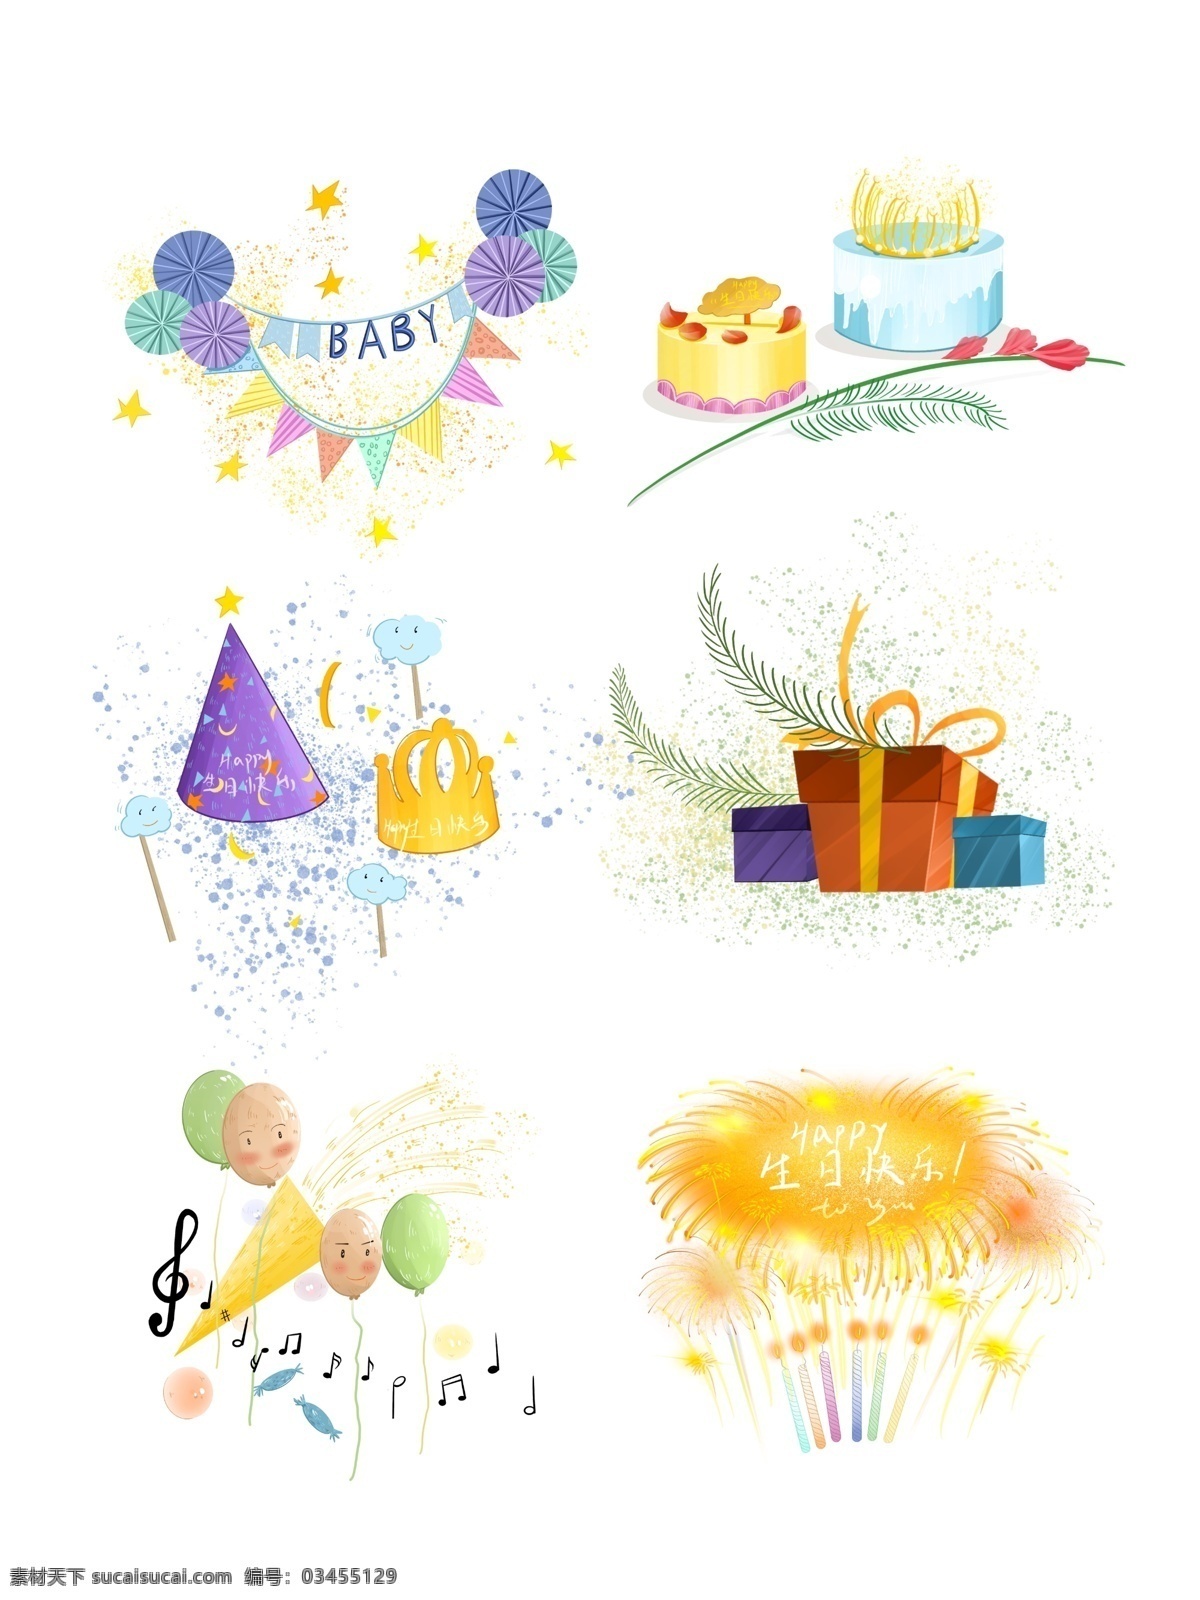 生日 组合 帽子 场景 布置 蛋糕 礼盒 焰火 气球 元素 生日帽 场景布置 扇子 手拿棒 蜡烛 音乐 糖果 泡泡 彩带 鲜花